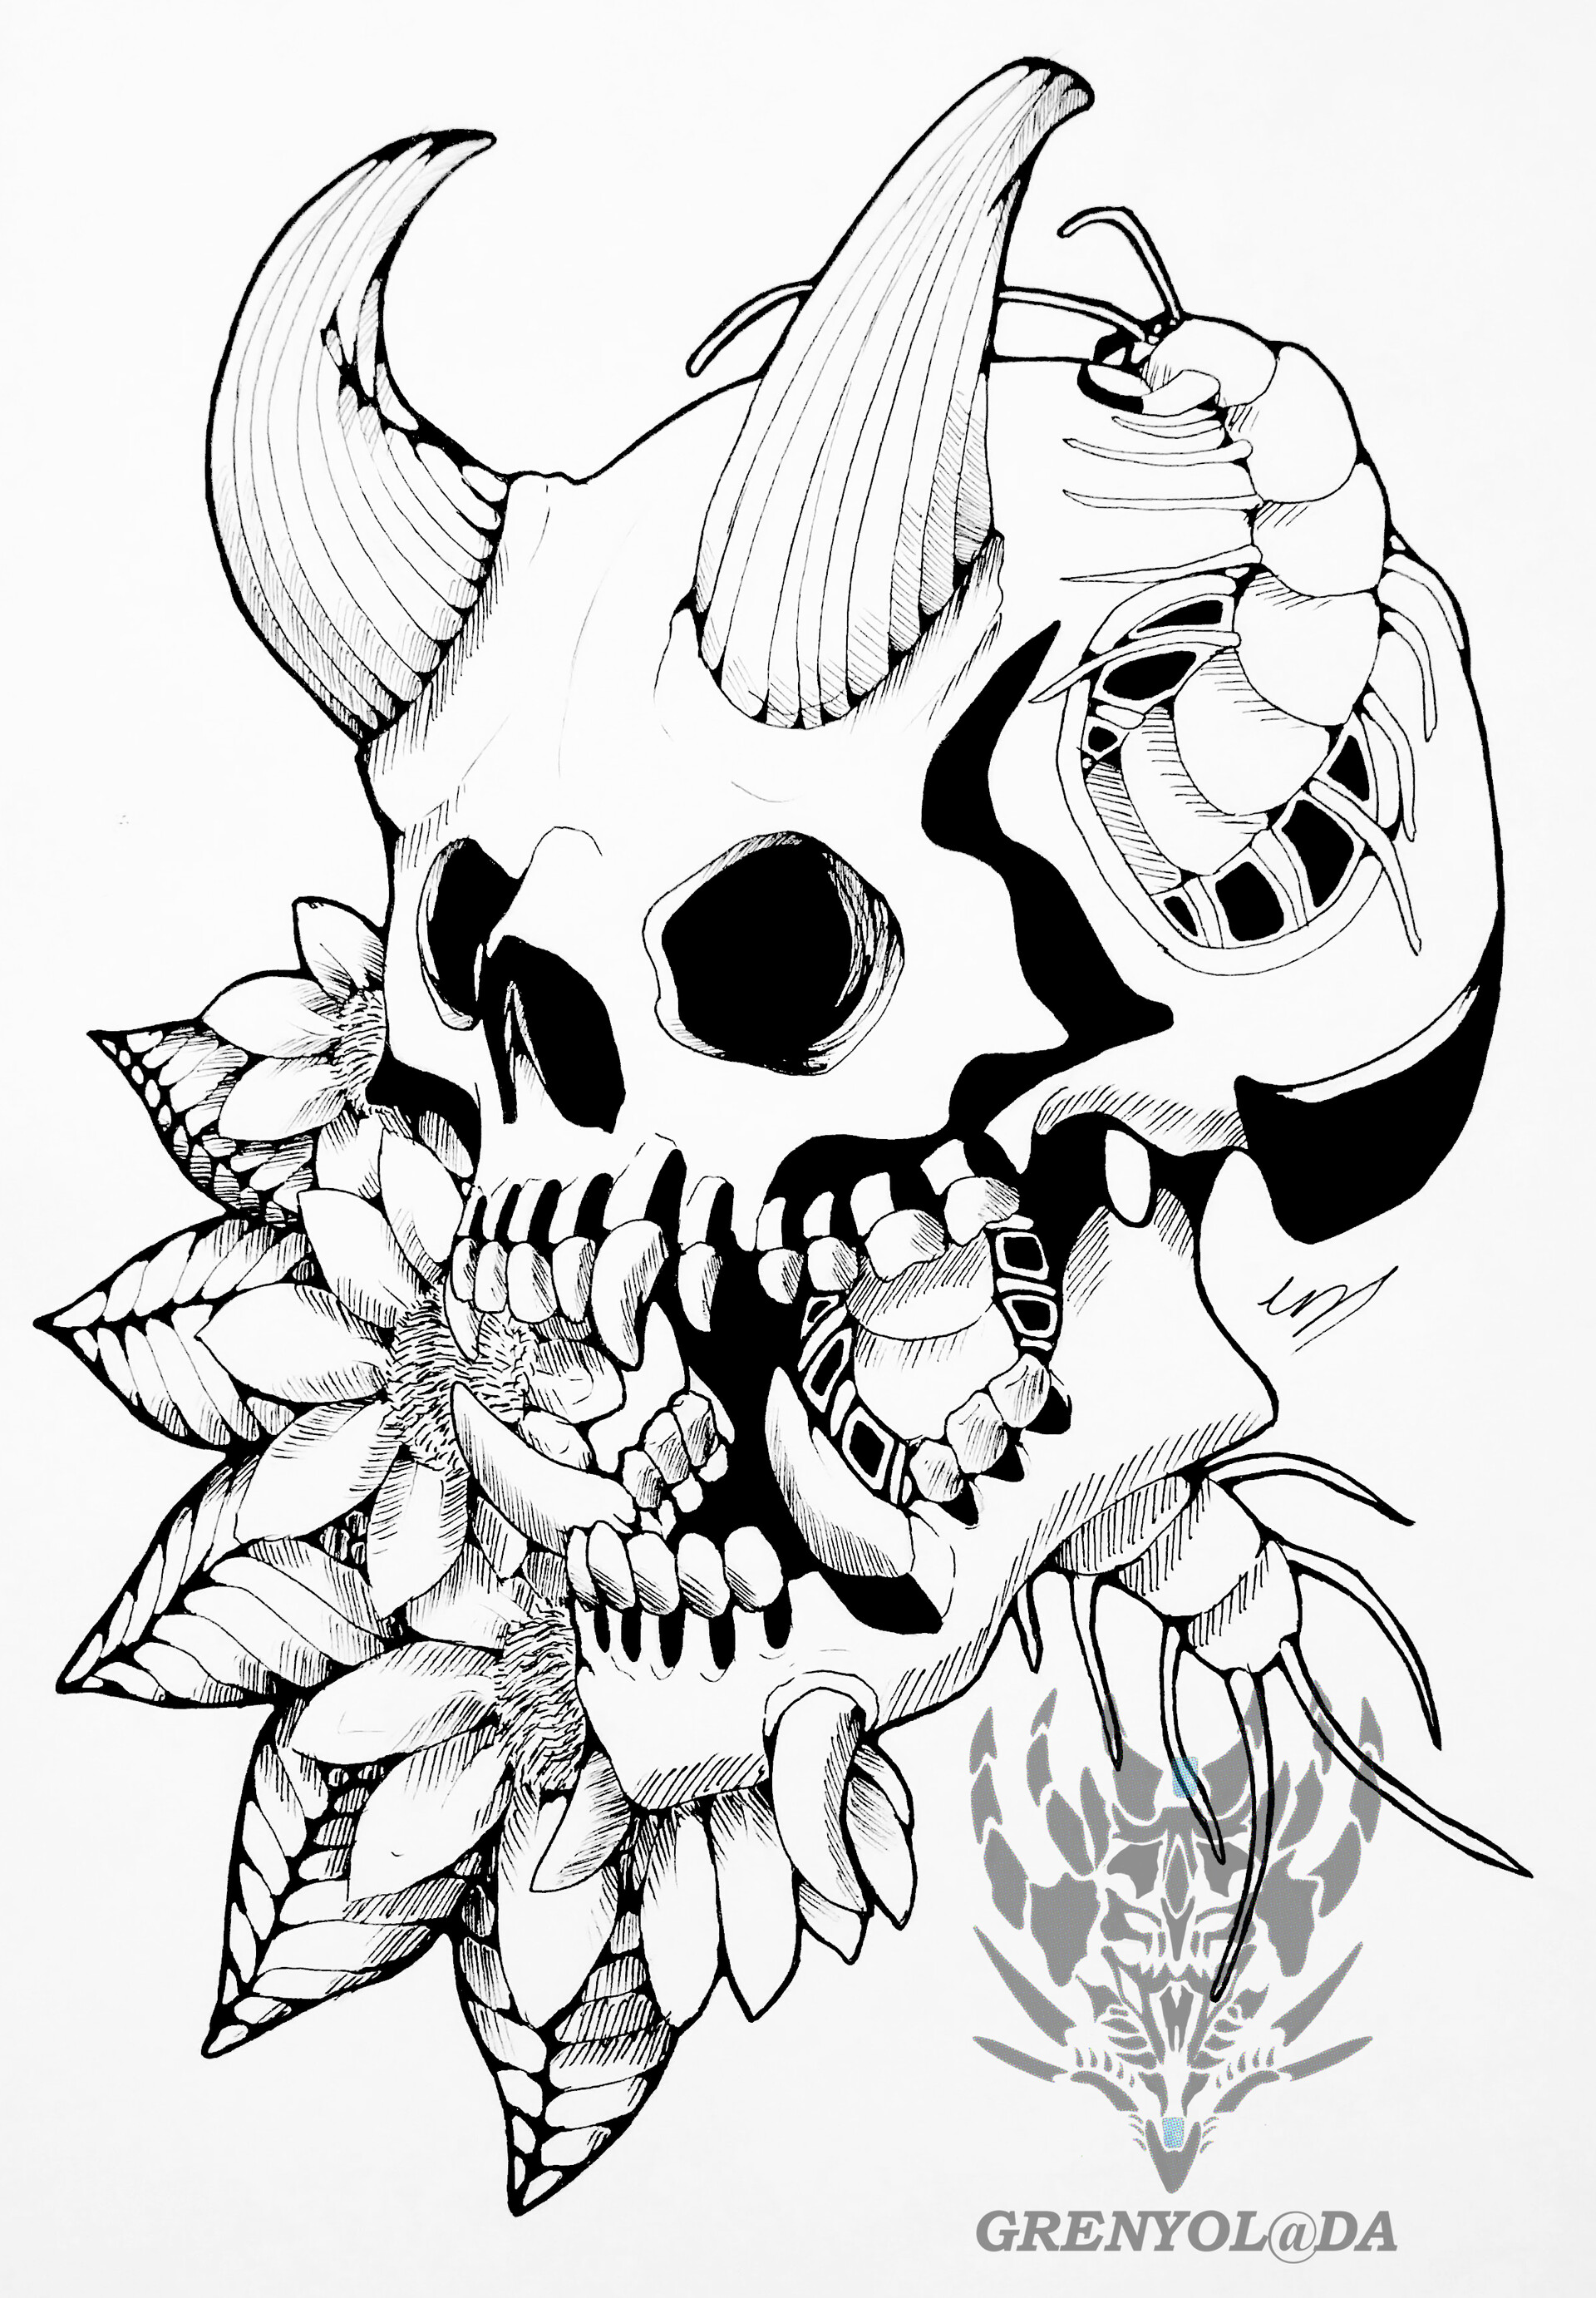 Demon Skull Tattoo Design Vector Illustration Stock Vector Royalty Free  1562177566  Shutterstock